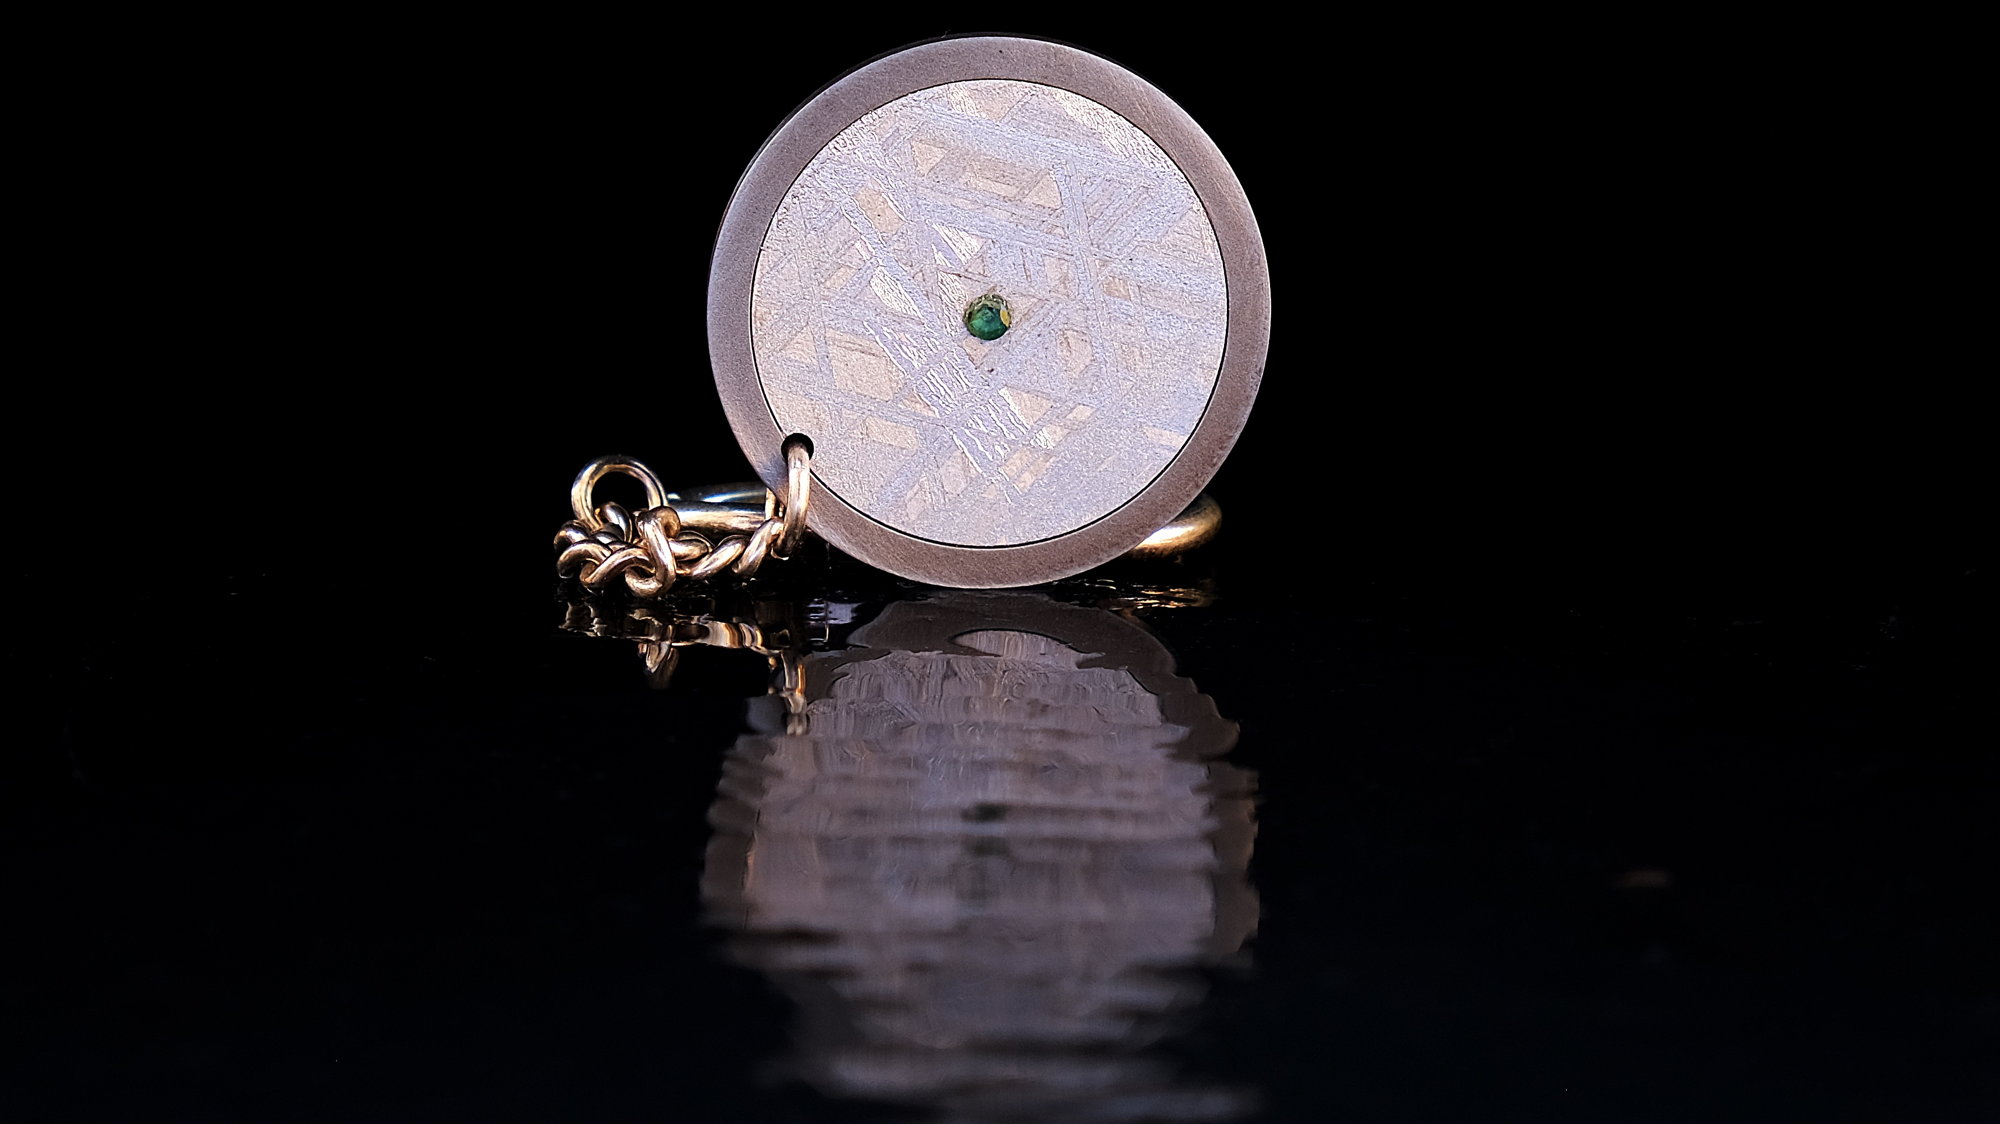 Original laguiole - Meteoriten-Schlüsselanhänger mit Muoninalusta-Meteoriten, Smaragd und Kette aus Silber